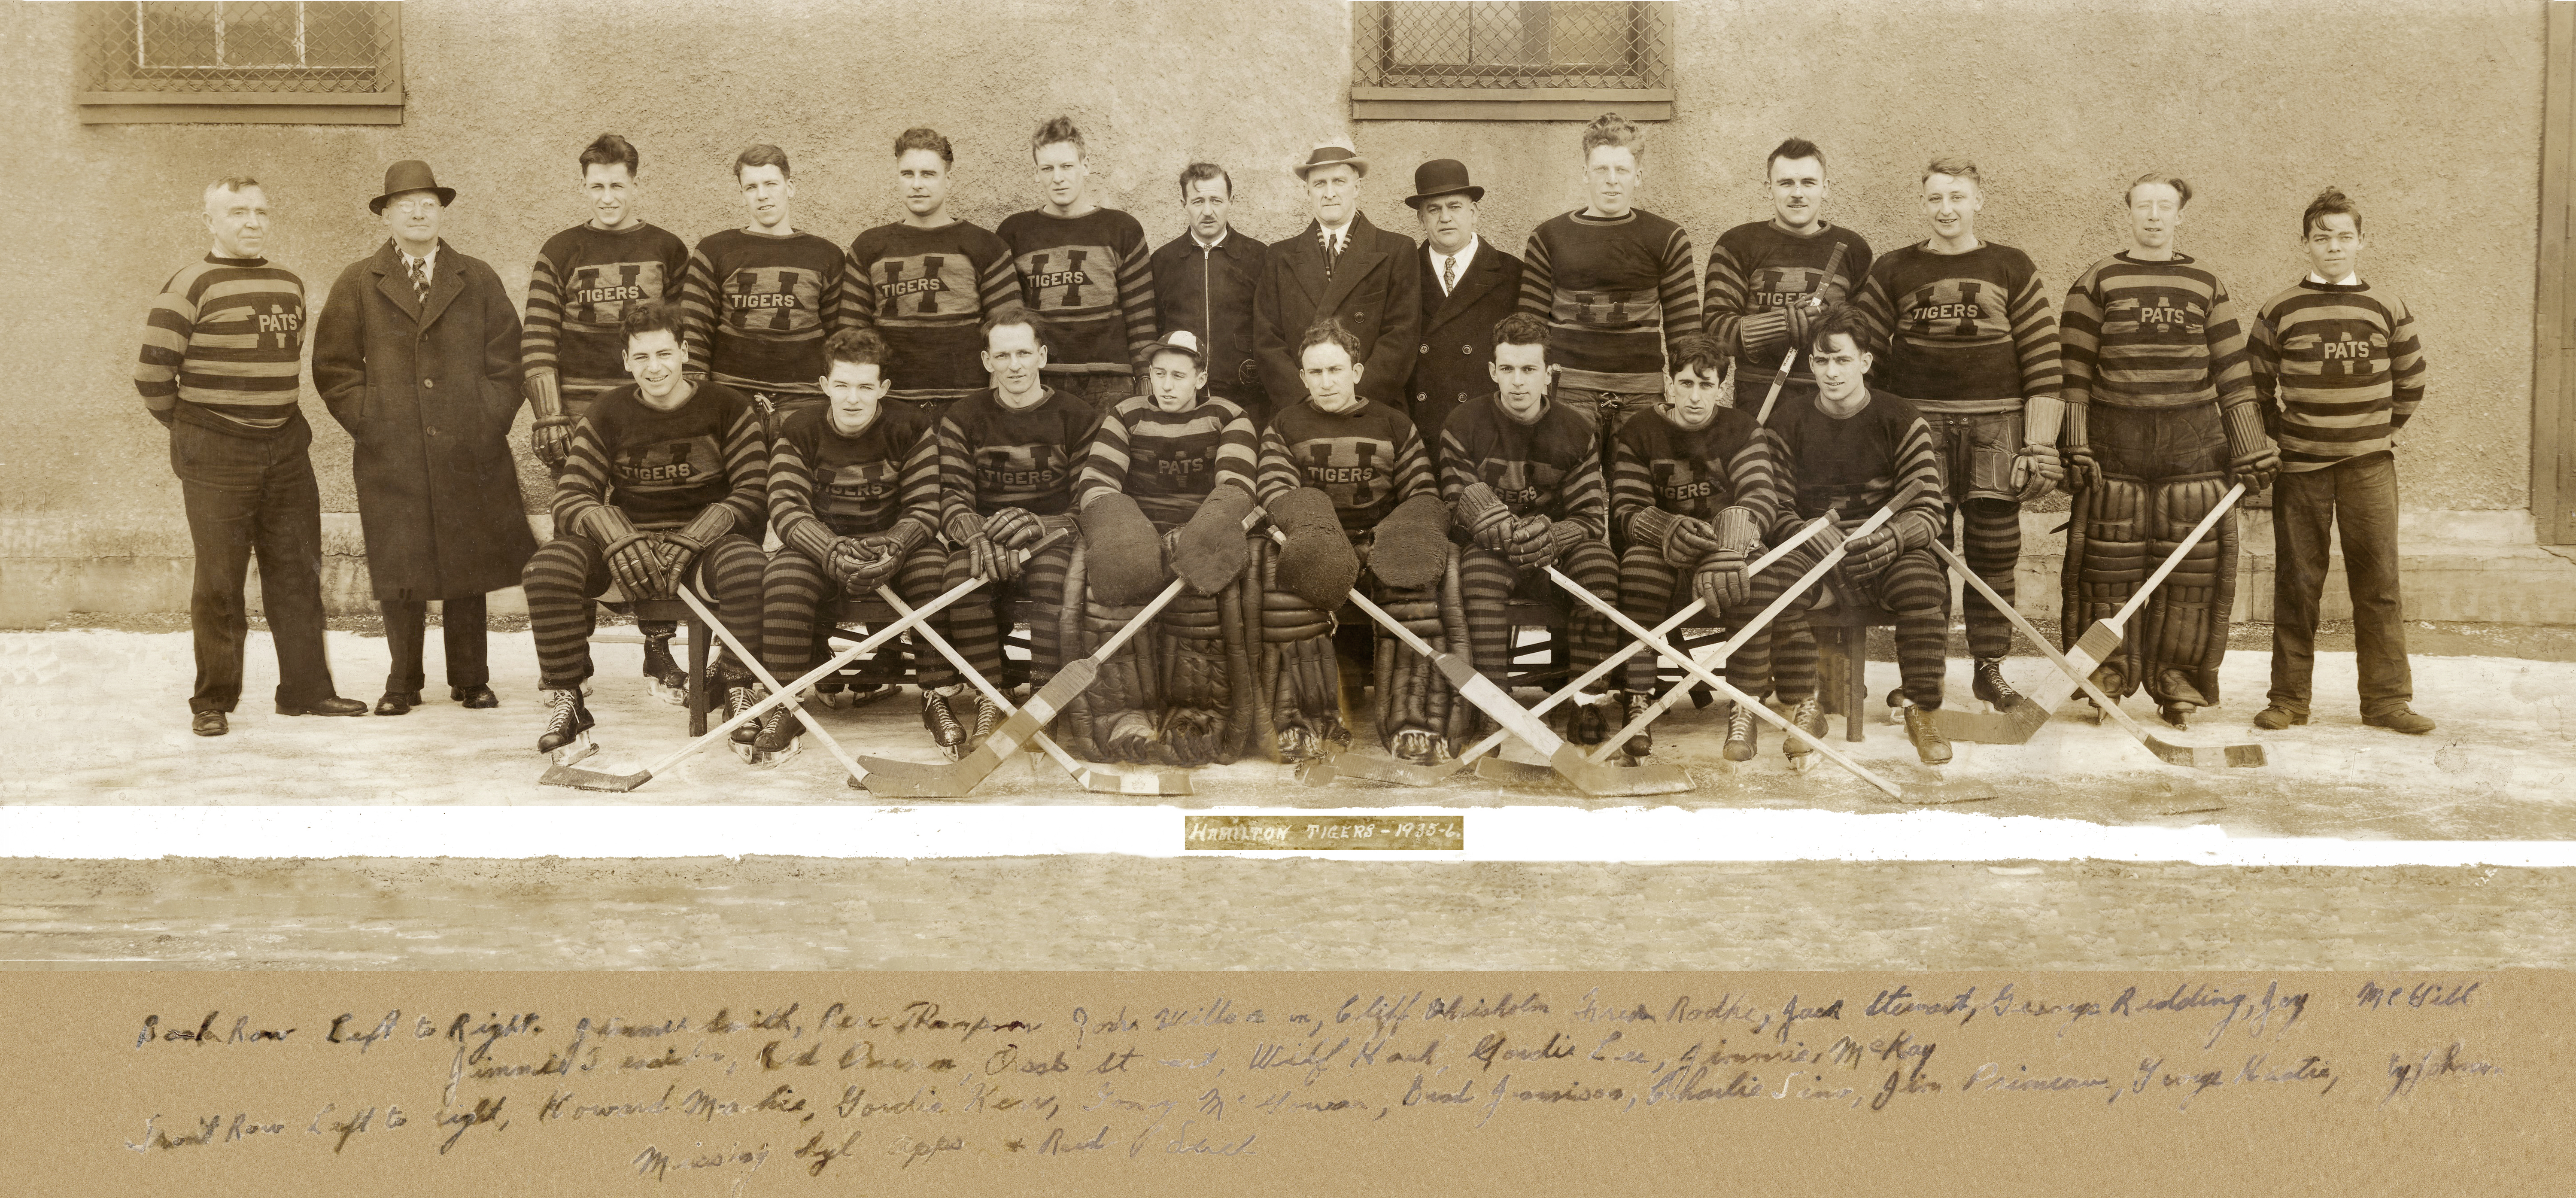 1936 Hamilton Tigers hockey team